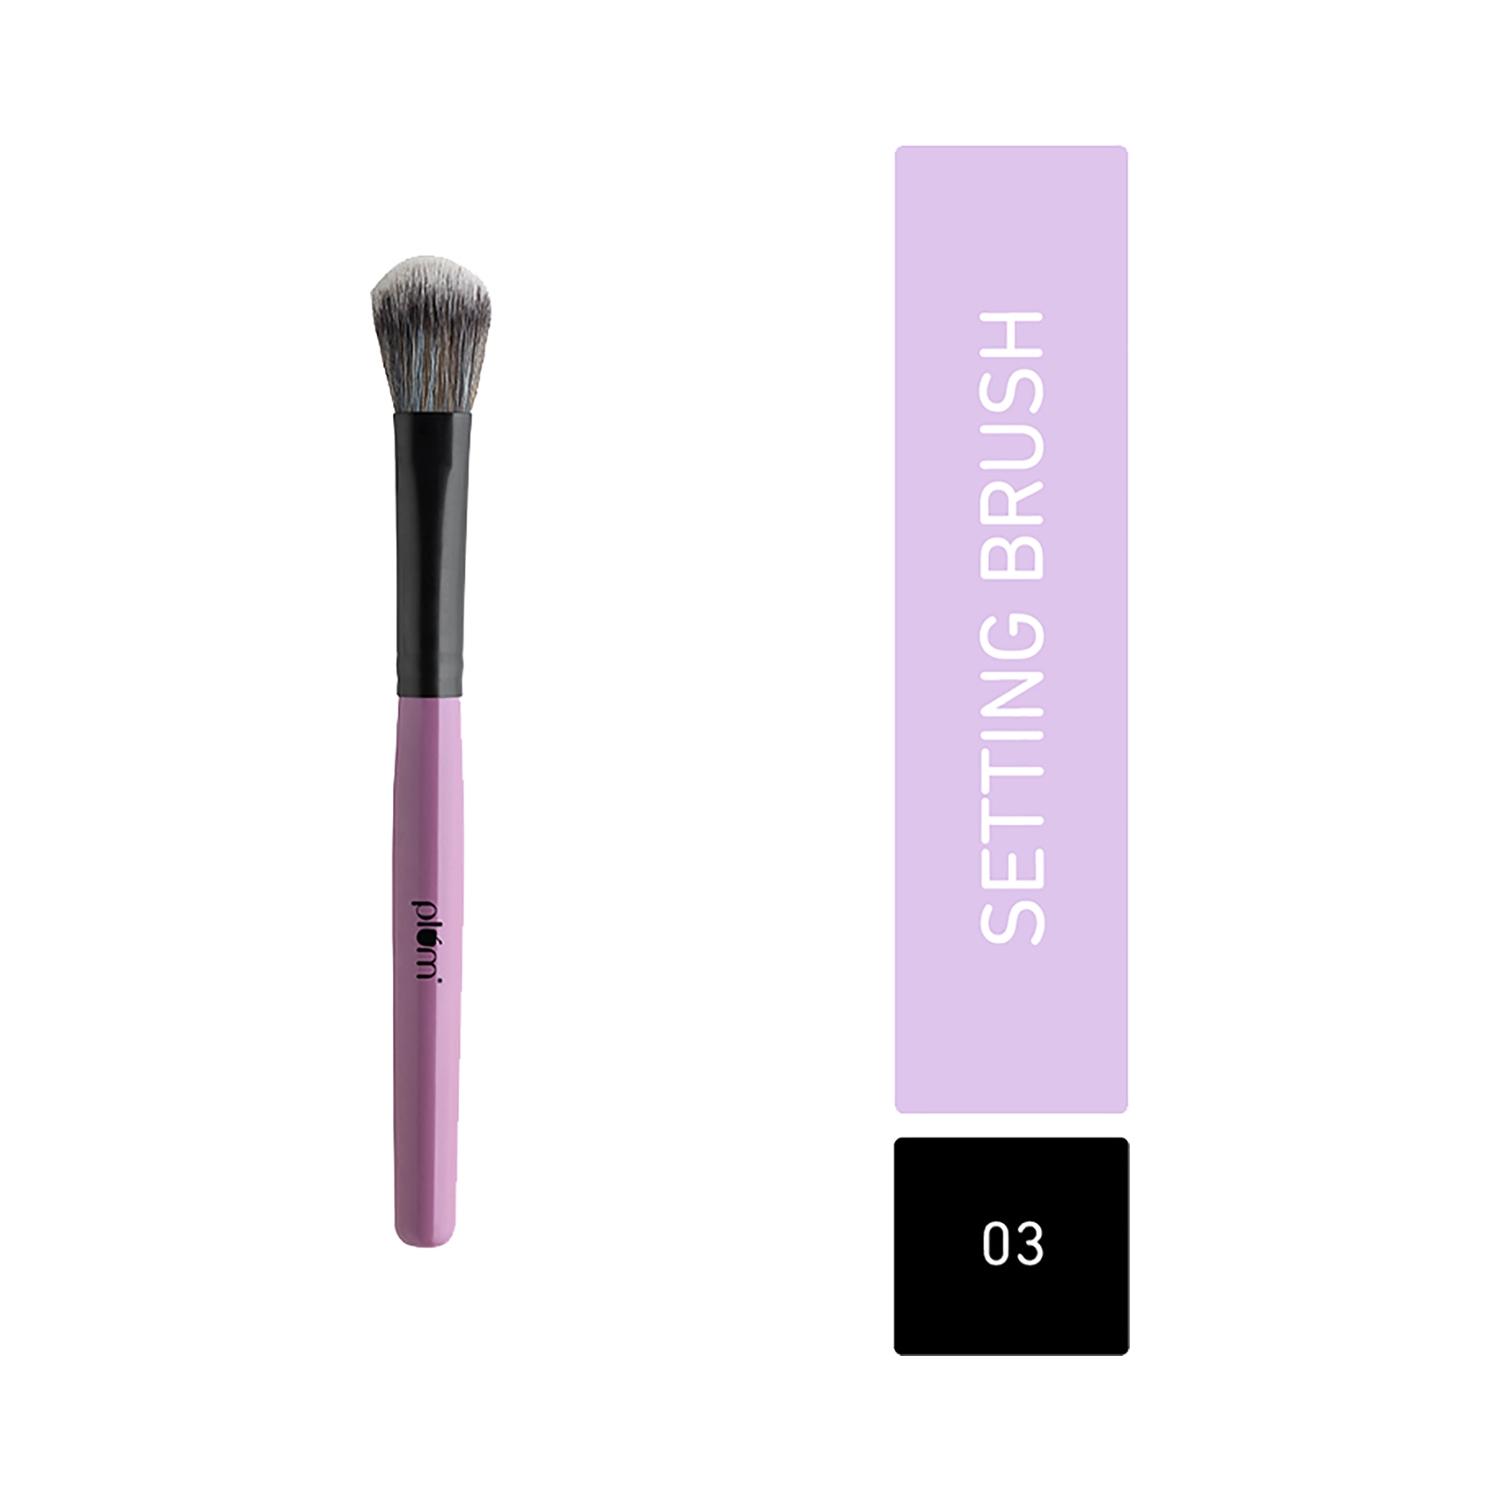 plum soft blend setting brush - 03 purple & black